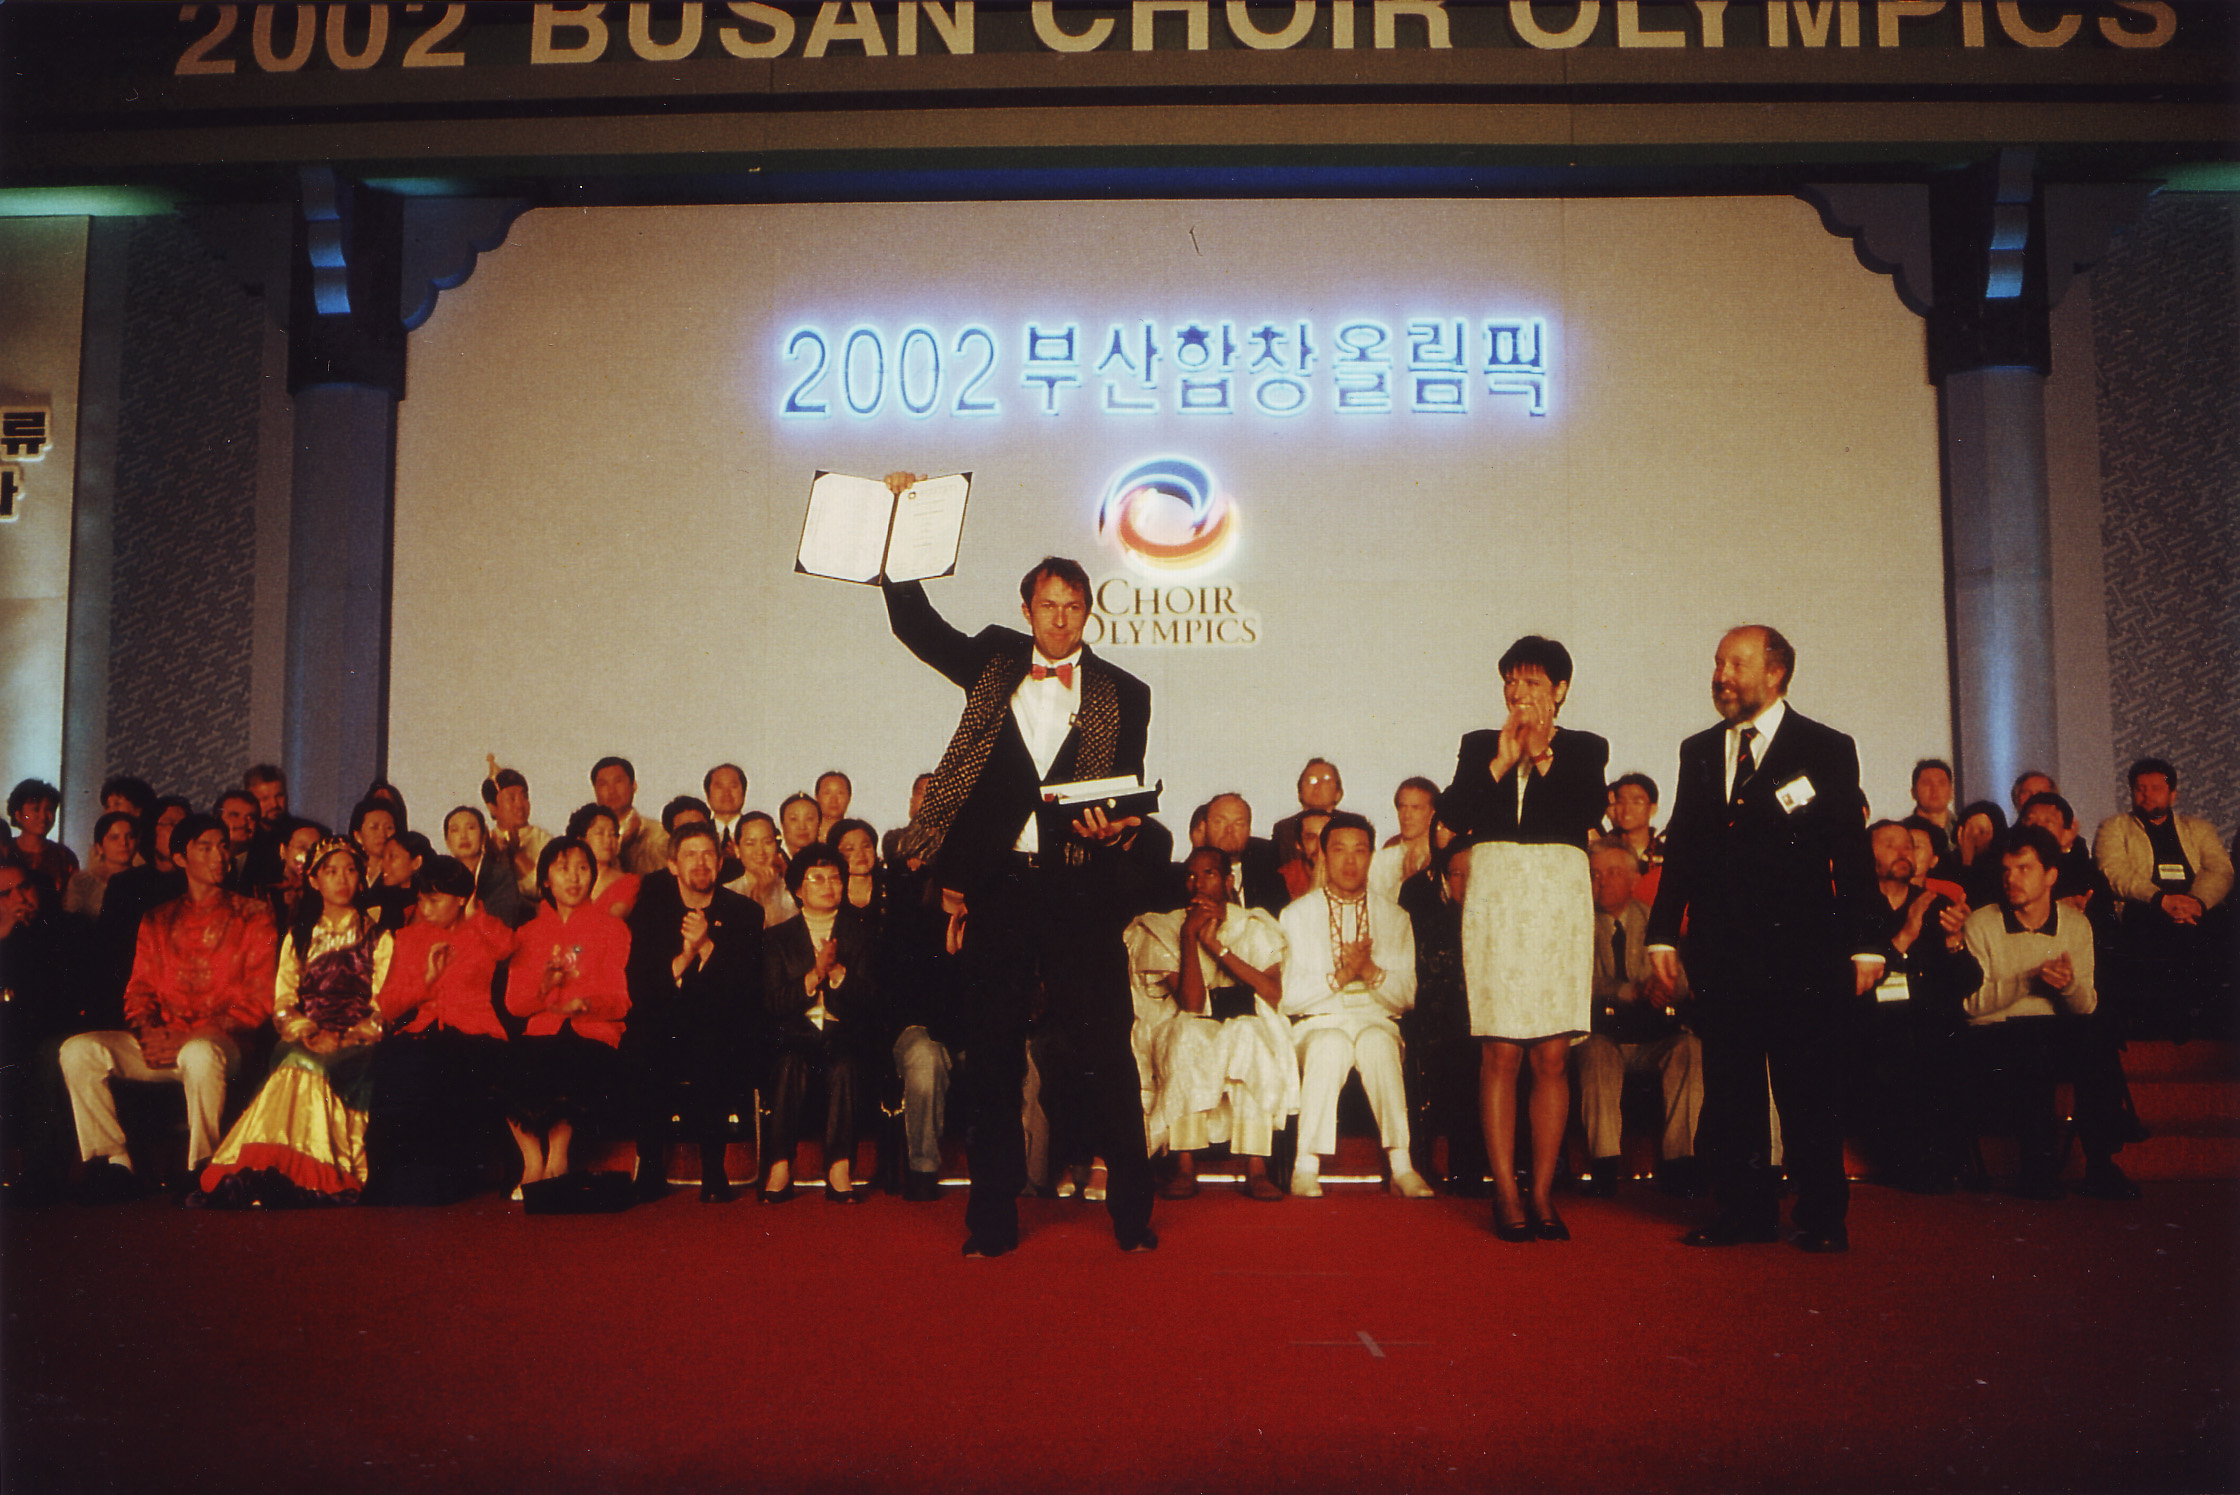 Choir Olympics 2002